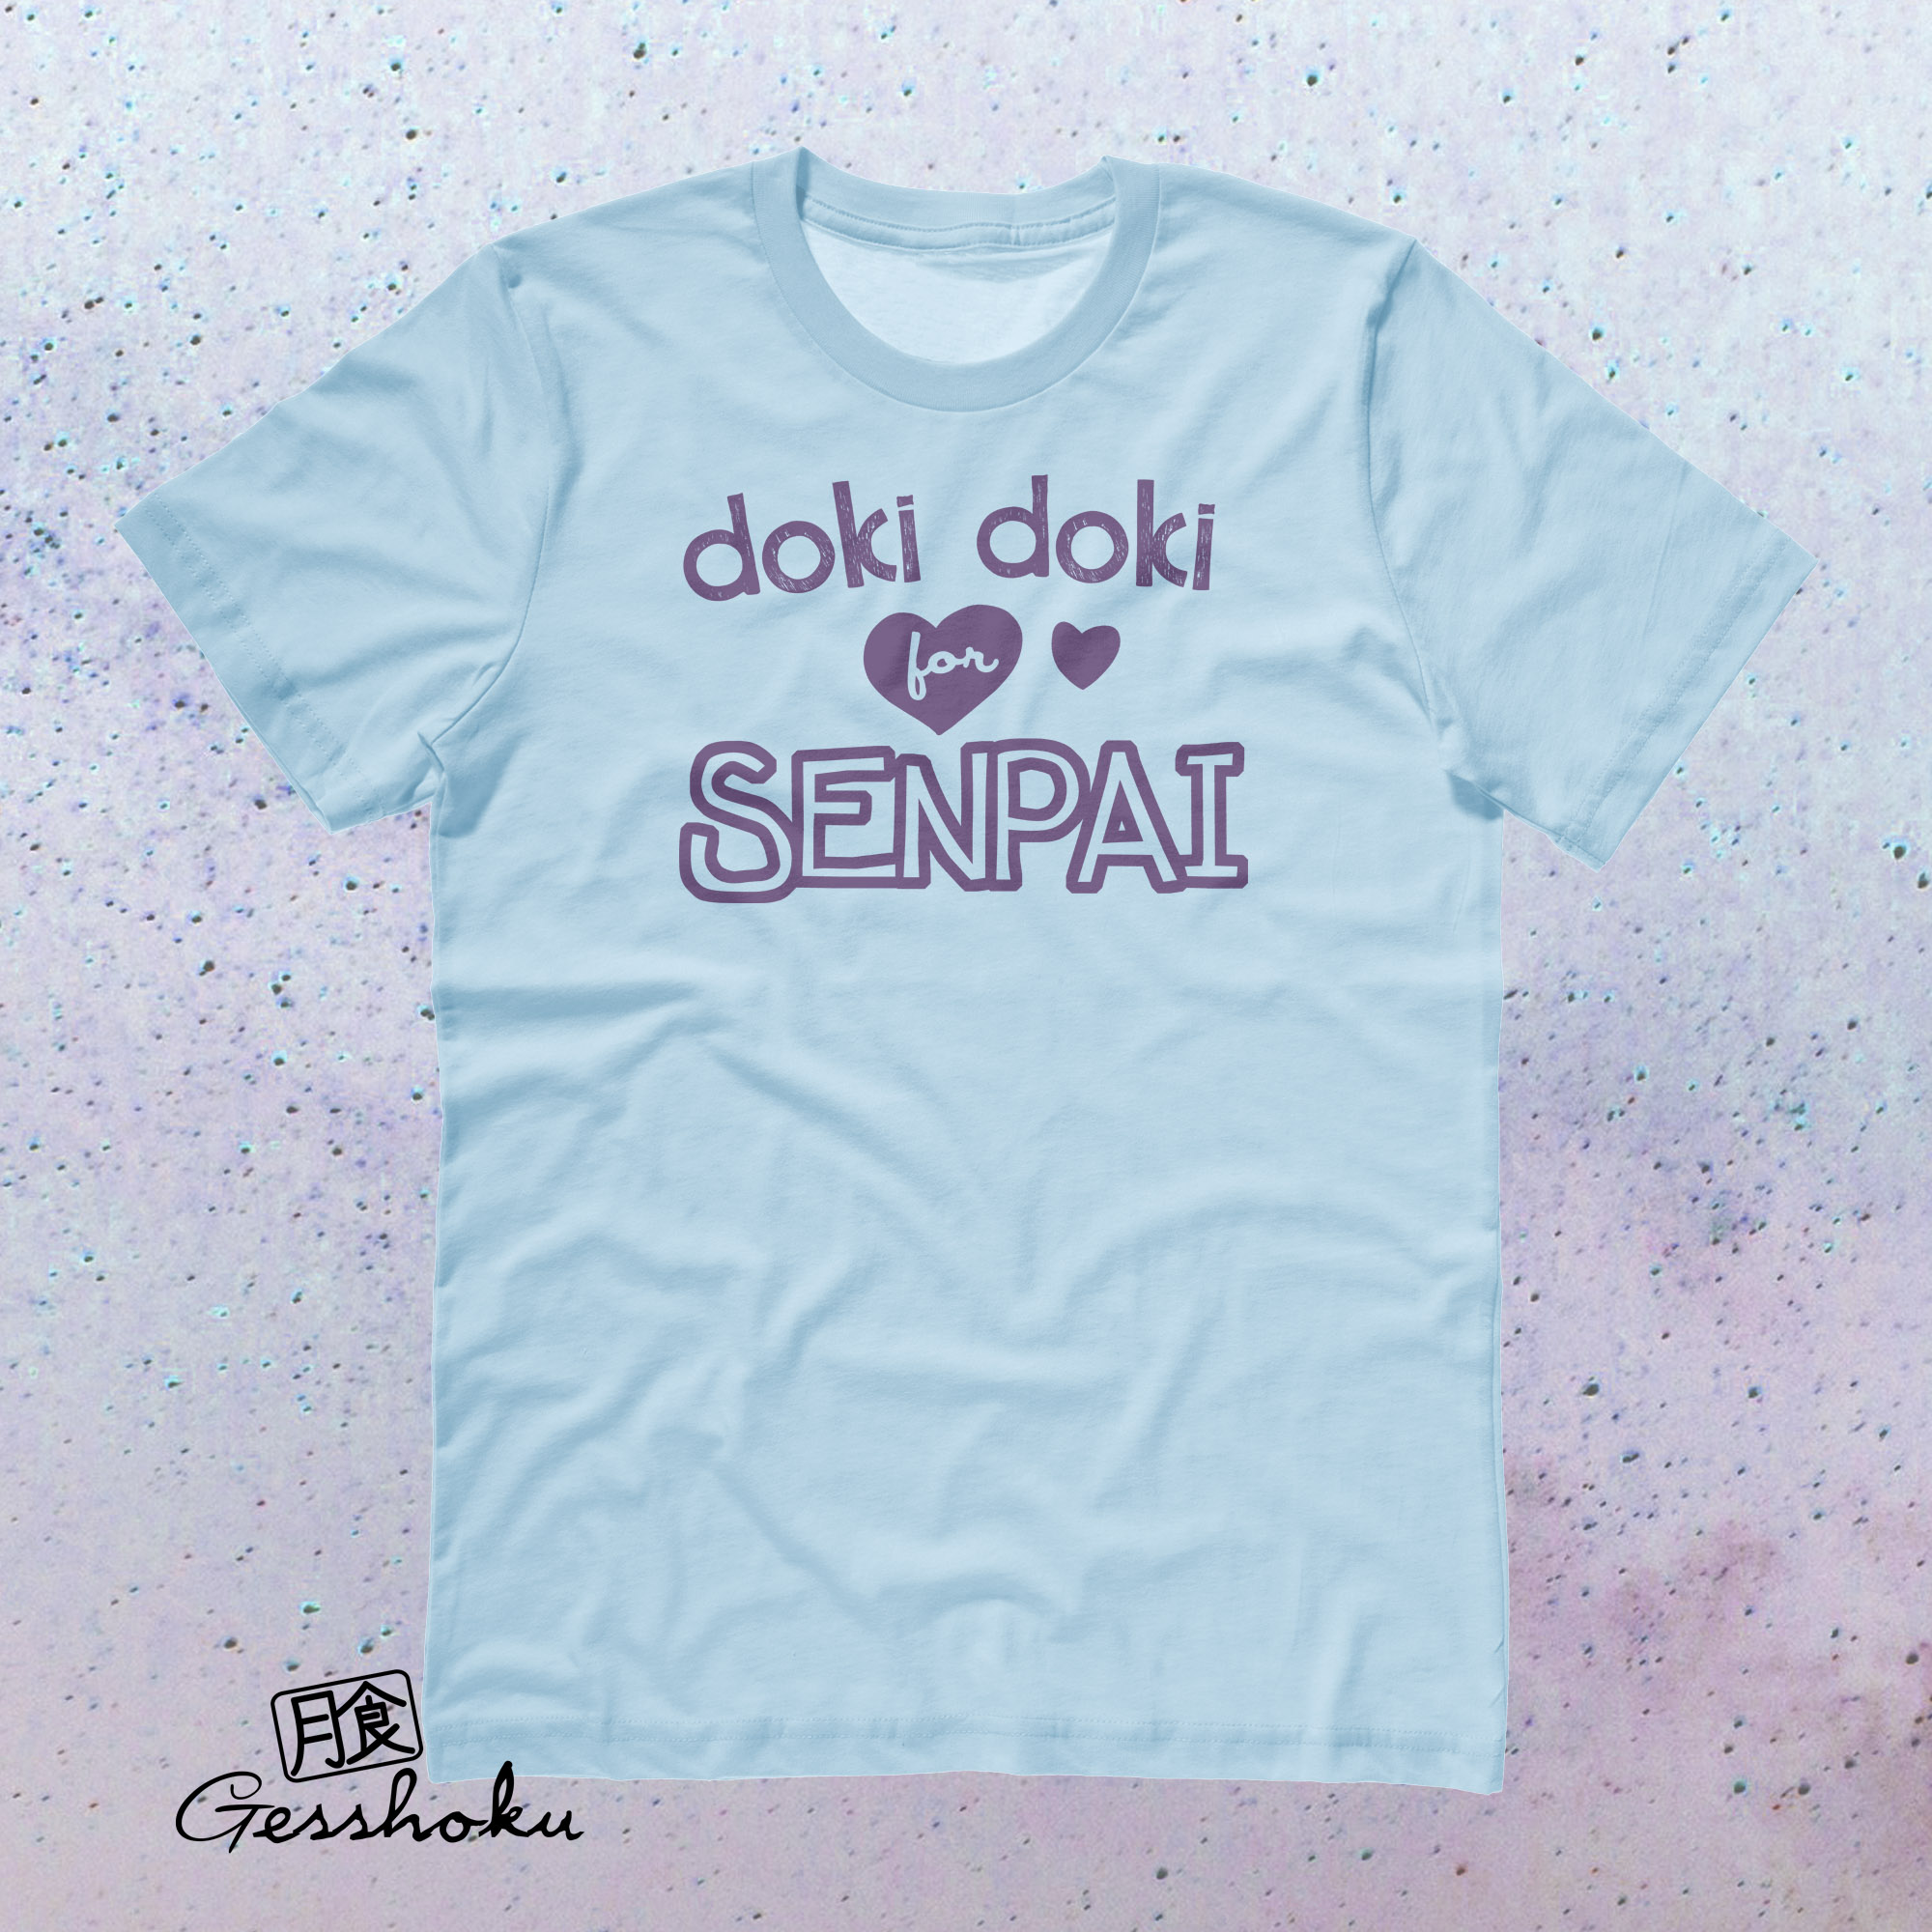 Doki Doki for Senpai T-shirt - Light Blue